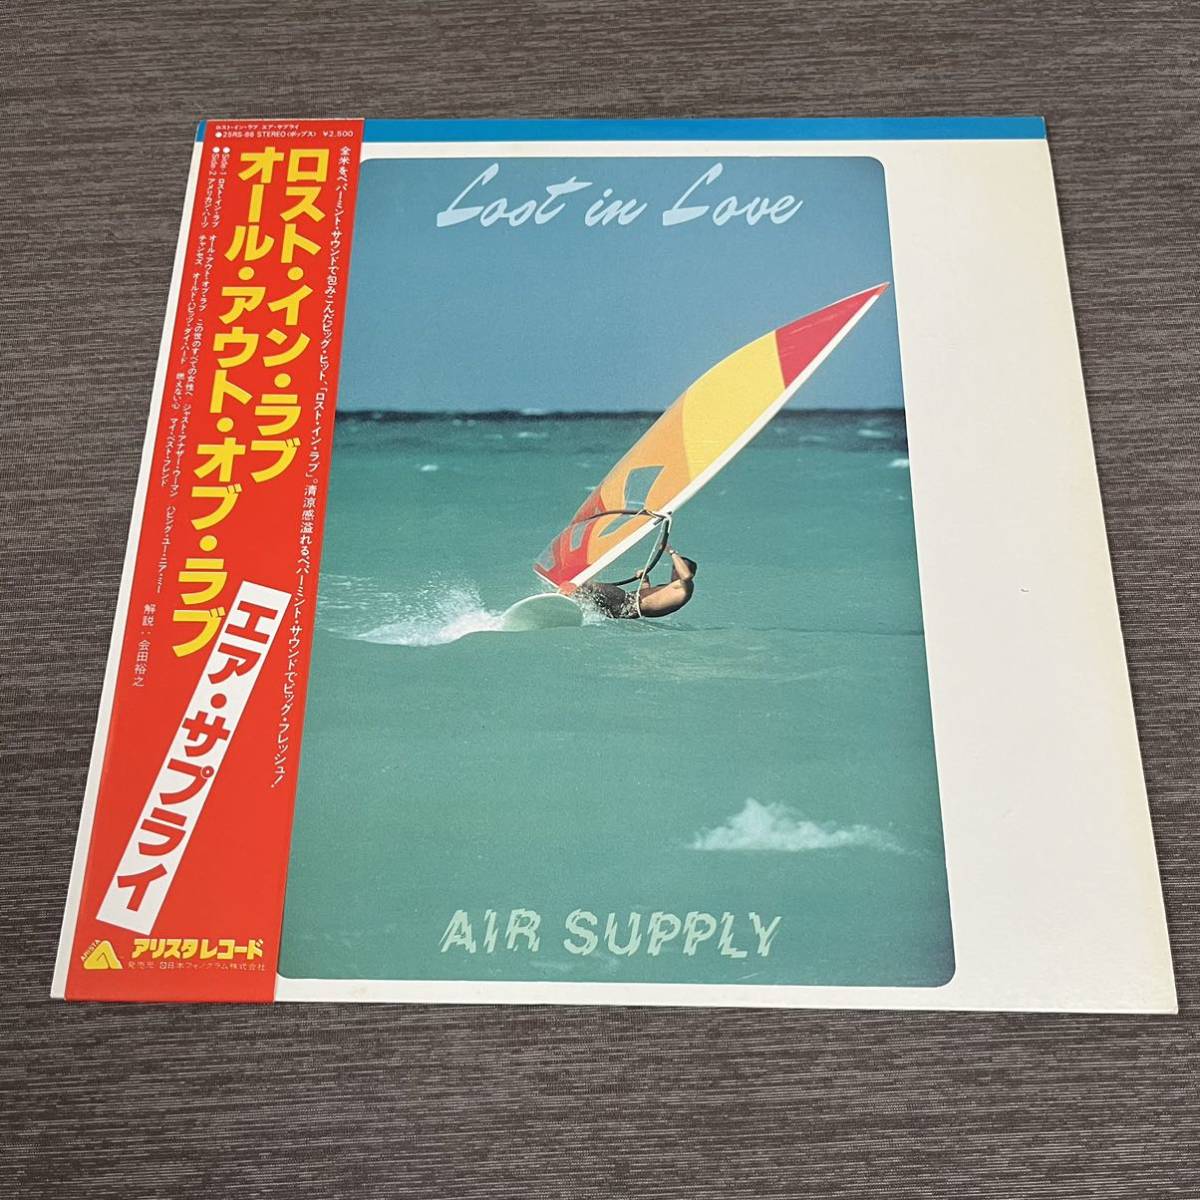 【国内盤帯付】AIR SUPPLY LOST IN LOVE エアサプライ / LP レコード / 25RS-86 / ライナー有 / 洋楽ポップス /_画像1